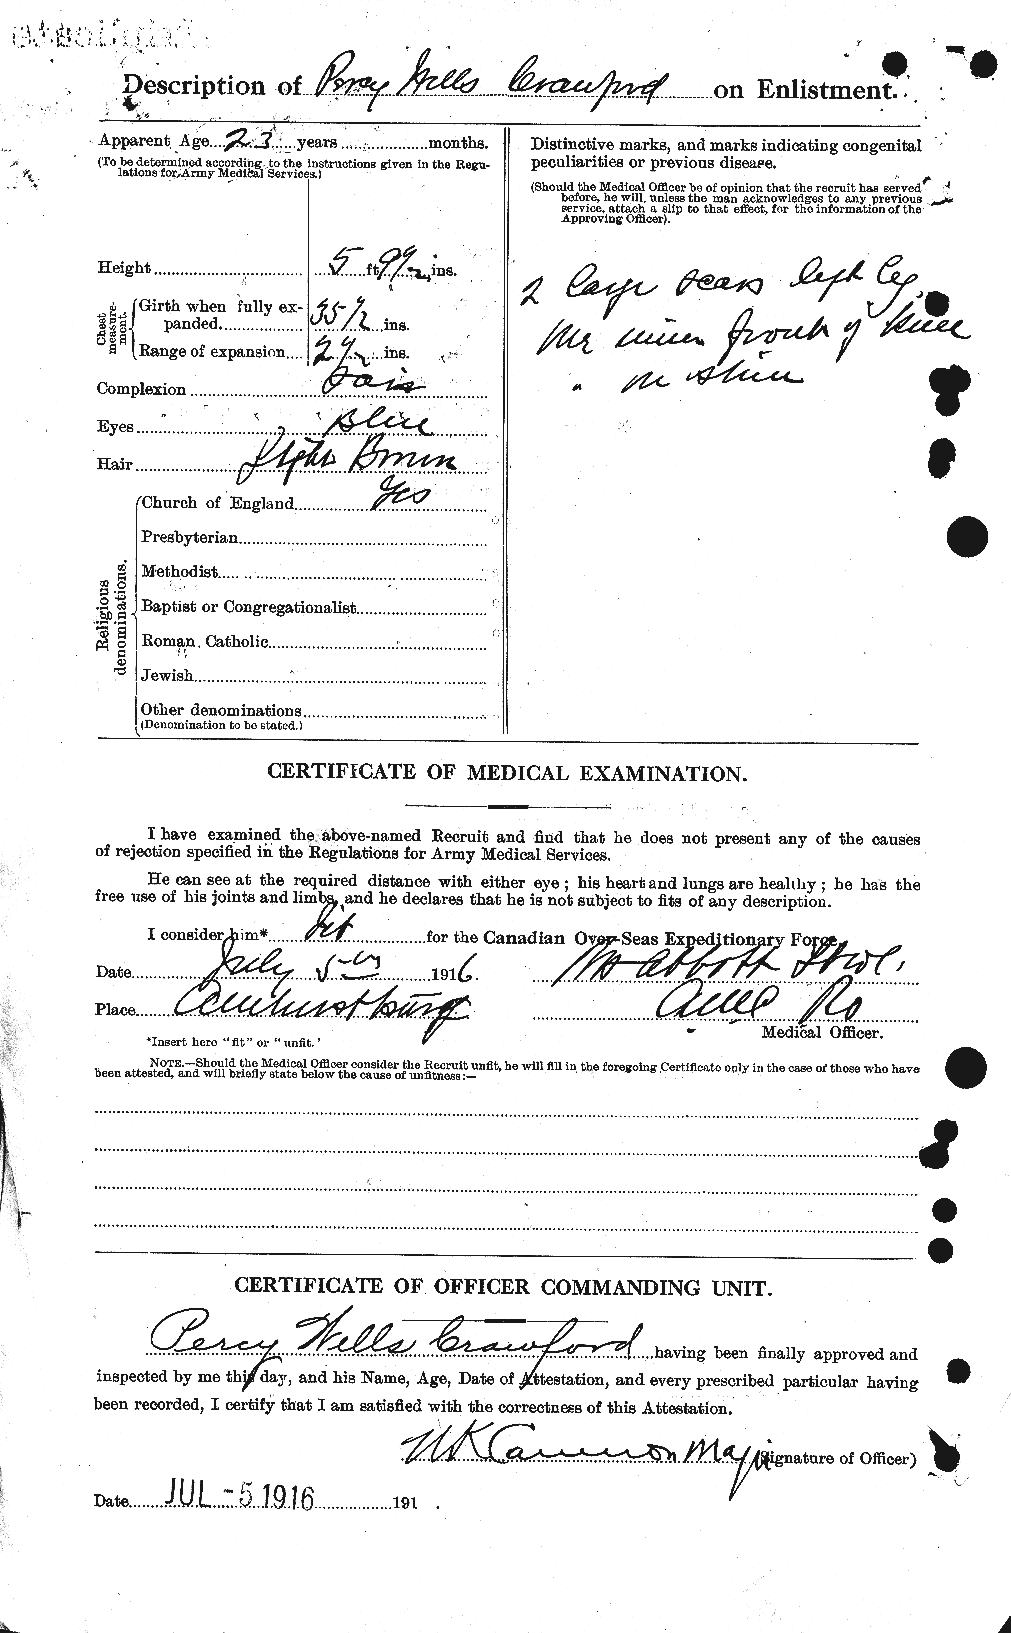 Dossiers du Personnel de la Première Guerre mondiale - CEC 061653b